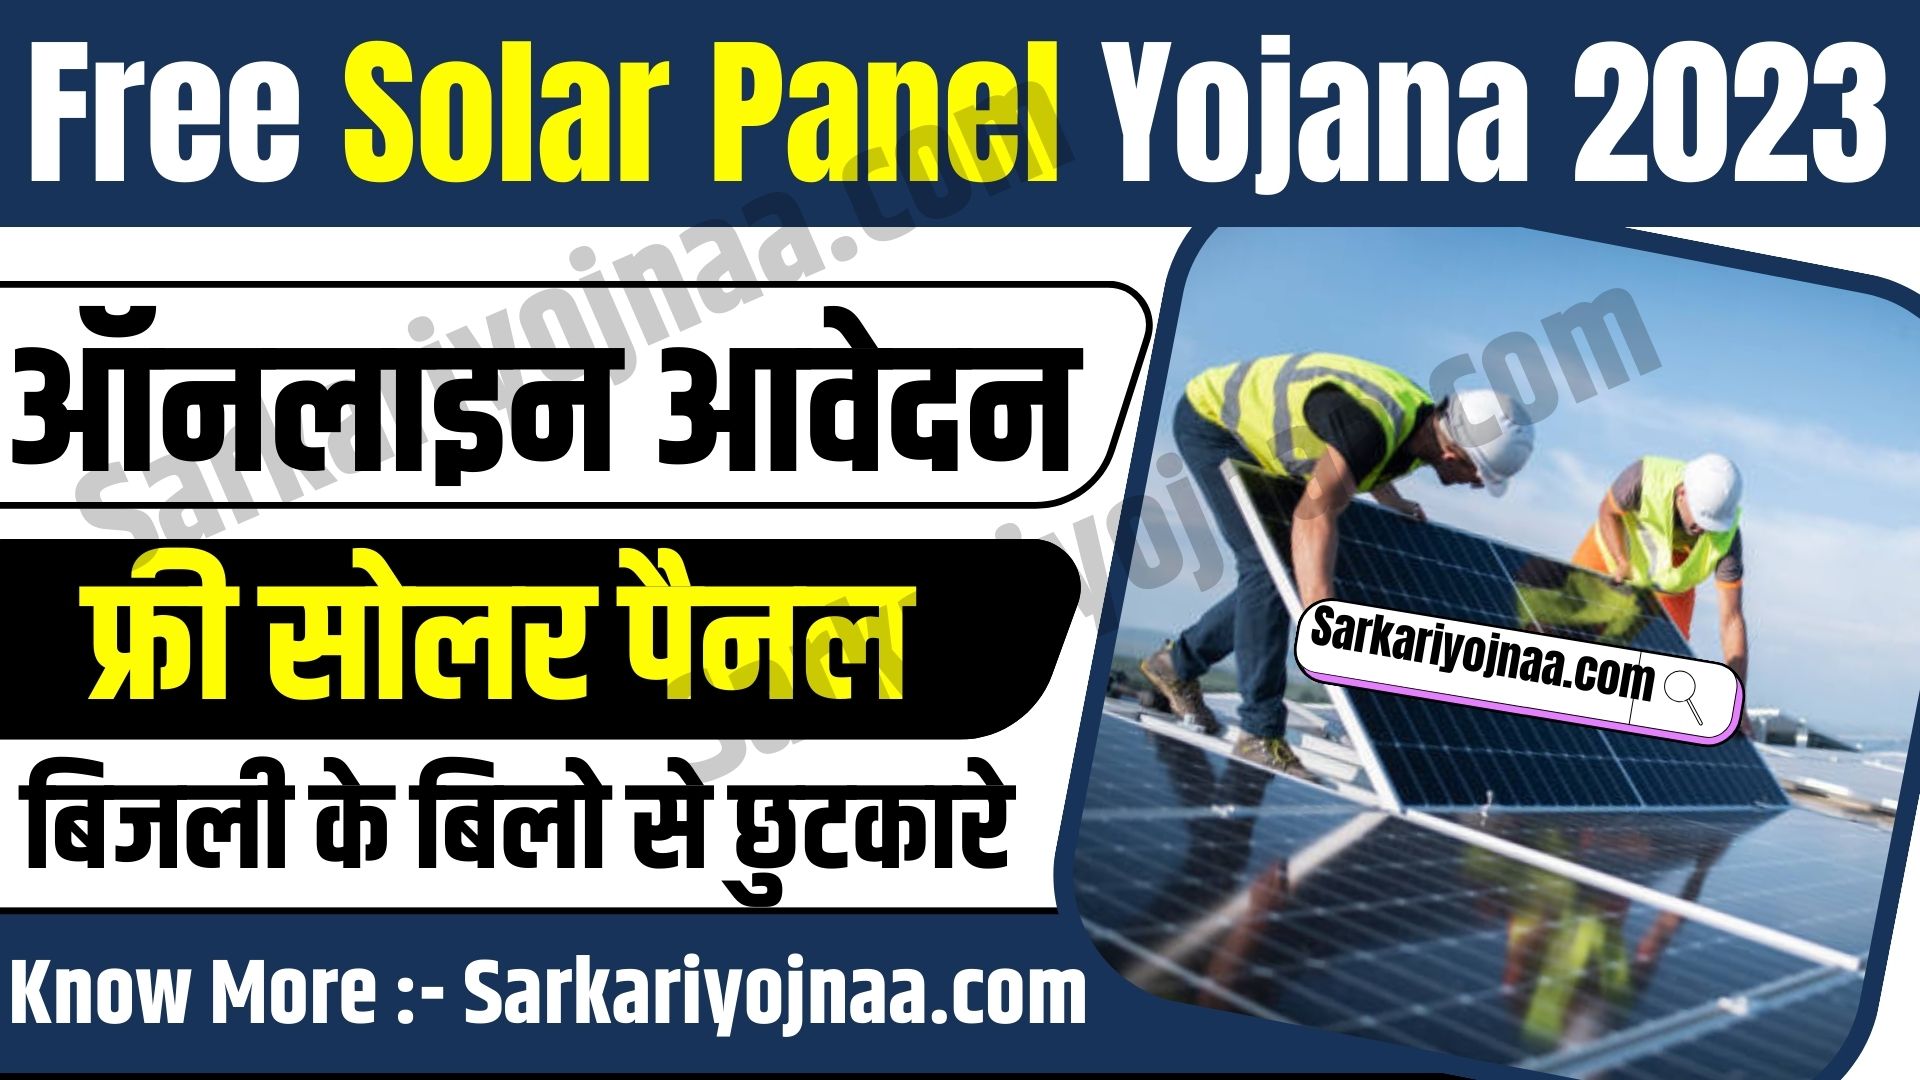 Free Solar Panel Yojana 2023: सरकार दे रही है सोलर पैनल लगवाने के लिए 100% सब्सिडी